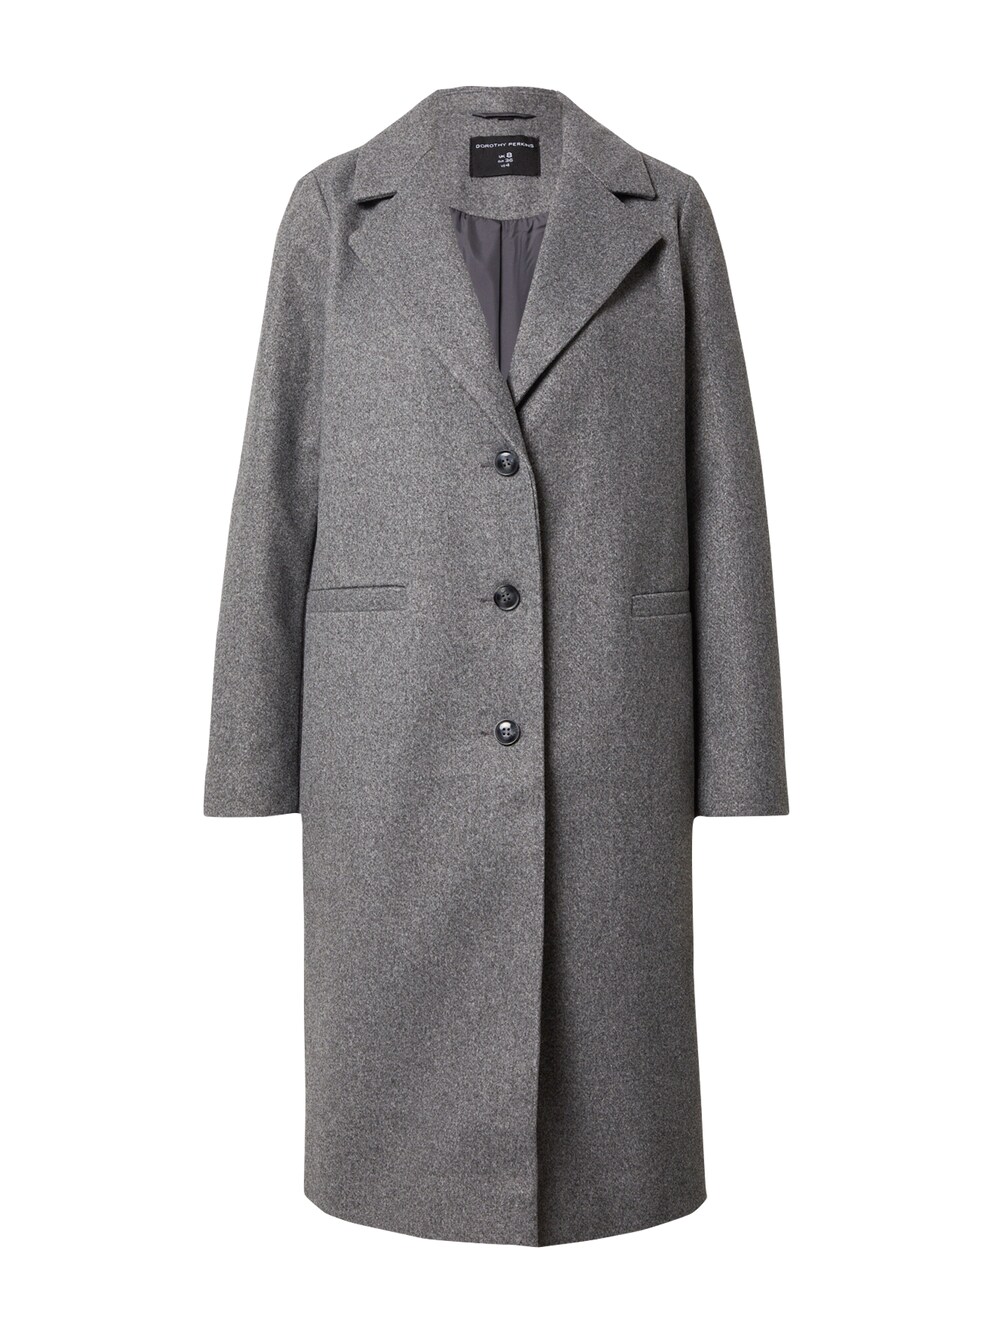 Межсезонное пальто Dorothy Perkins, пестрый серый межсезонное пальто edited ekaterina пестрый серый